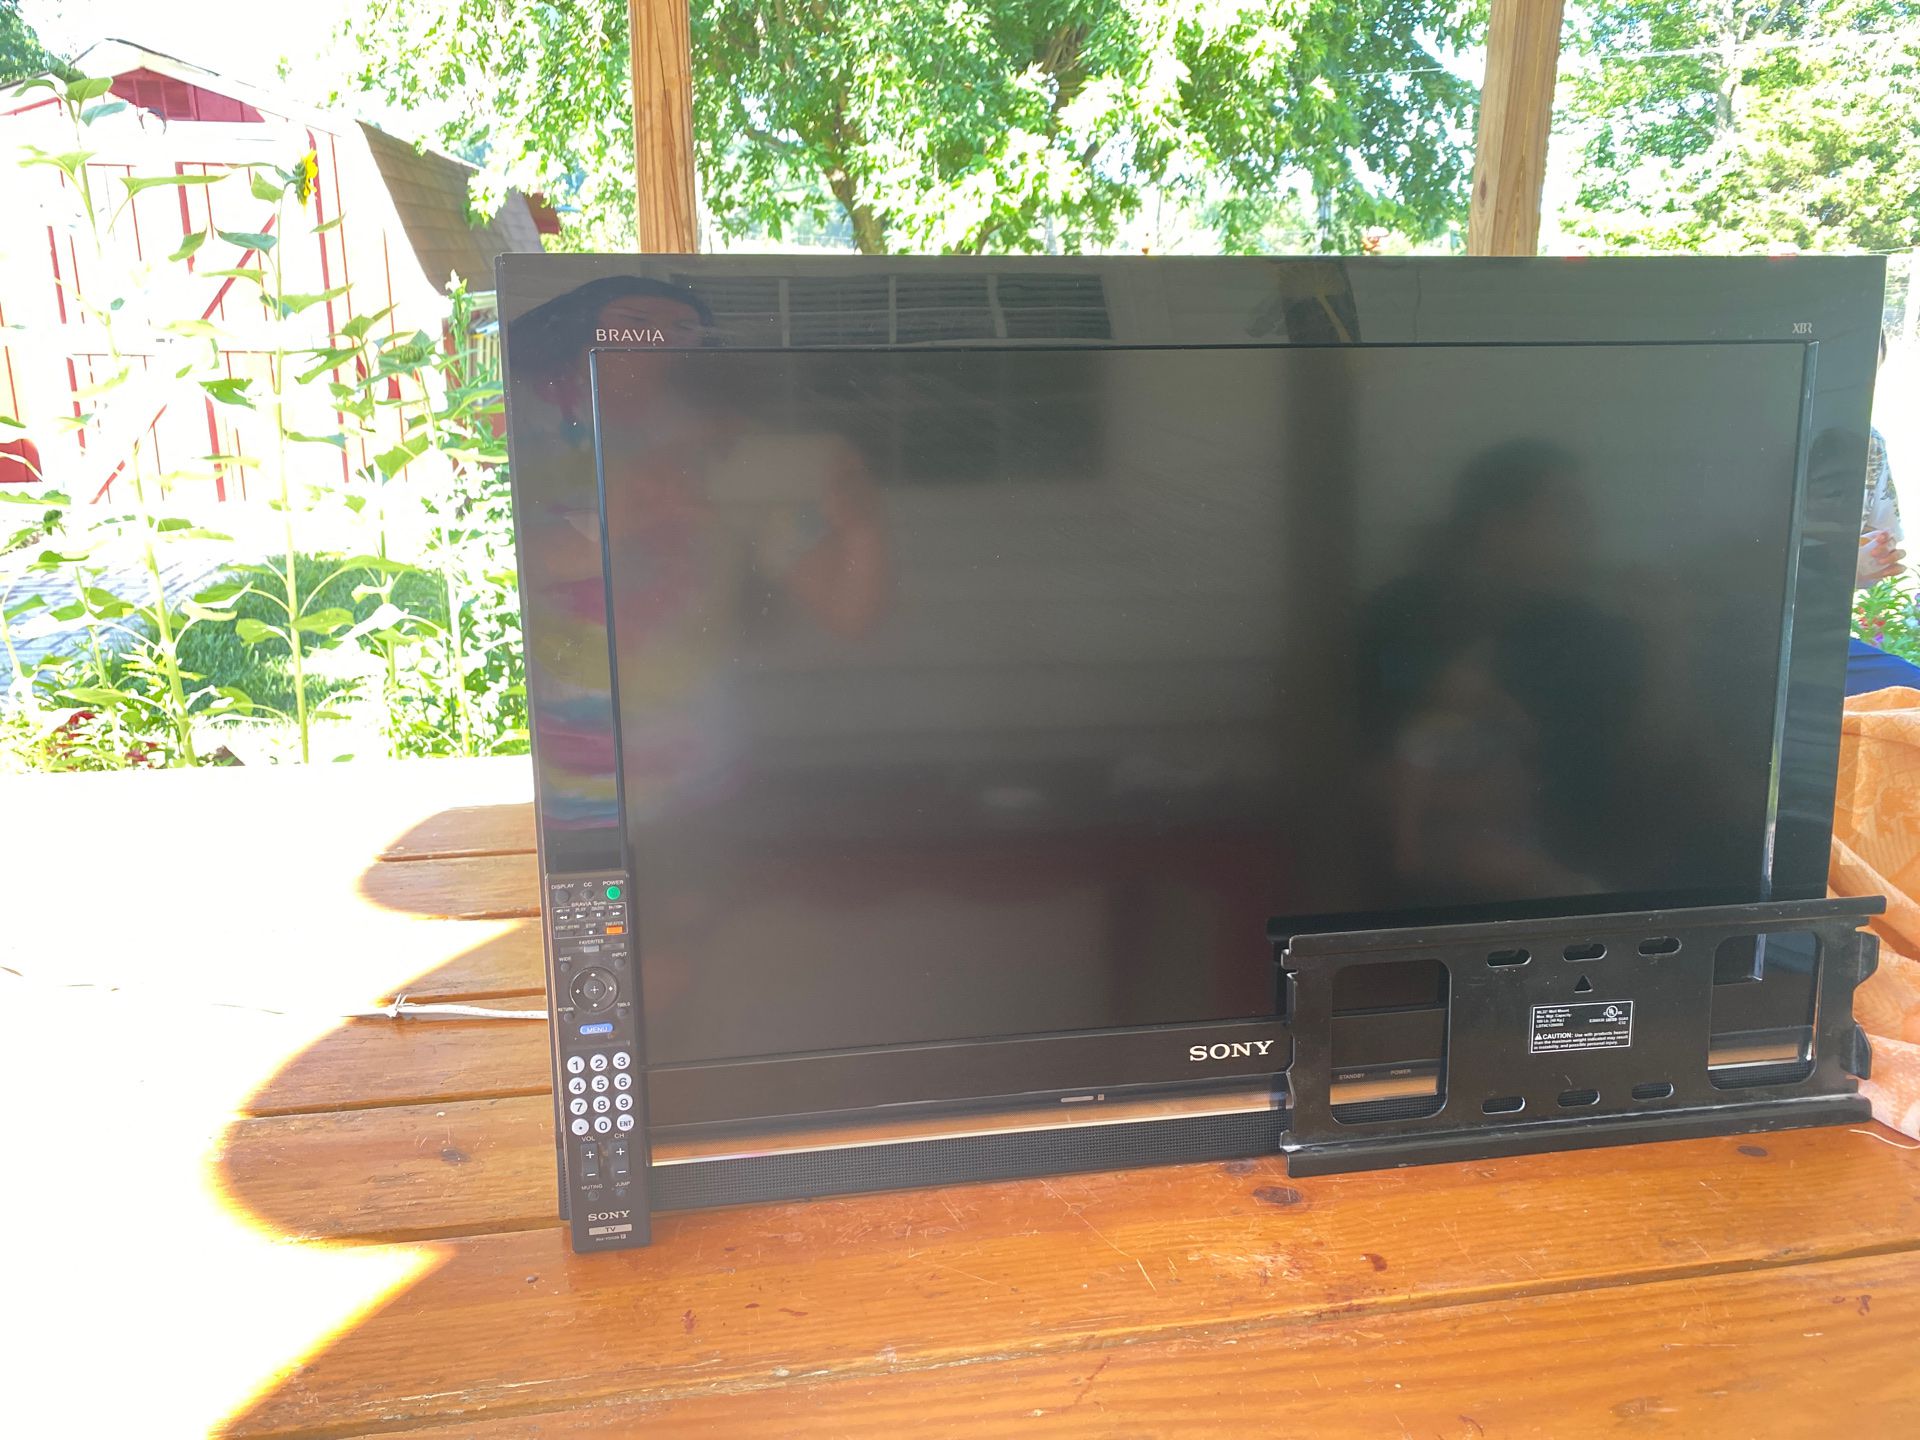 Sony 32” inch TV